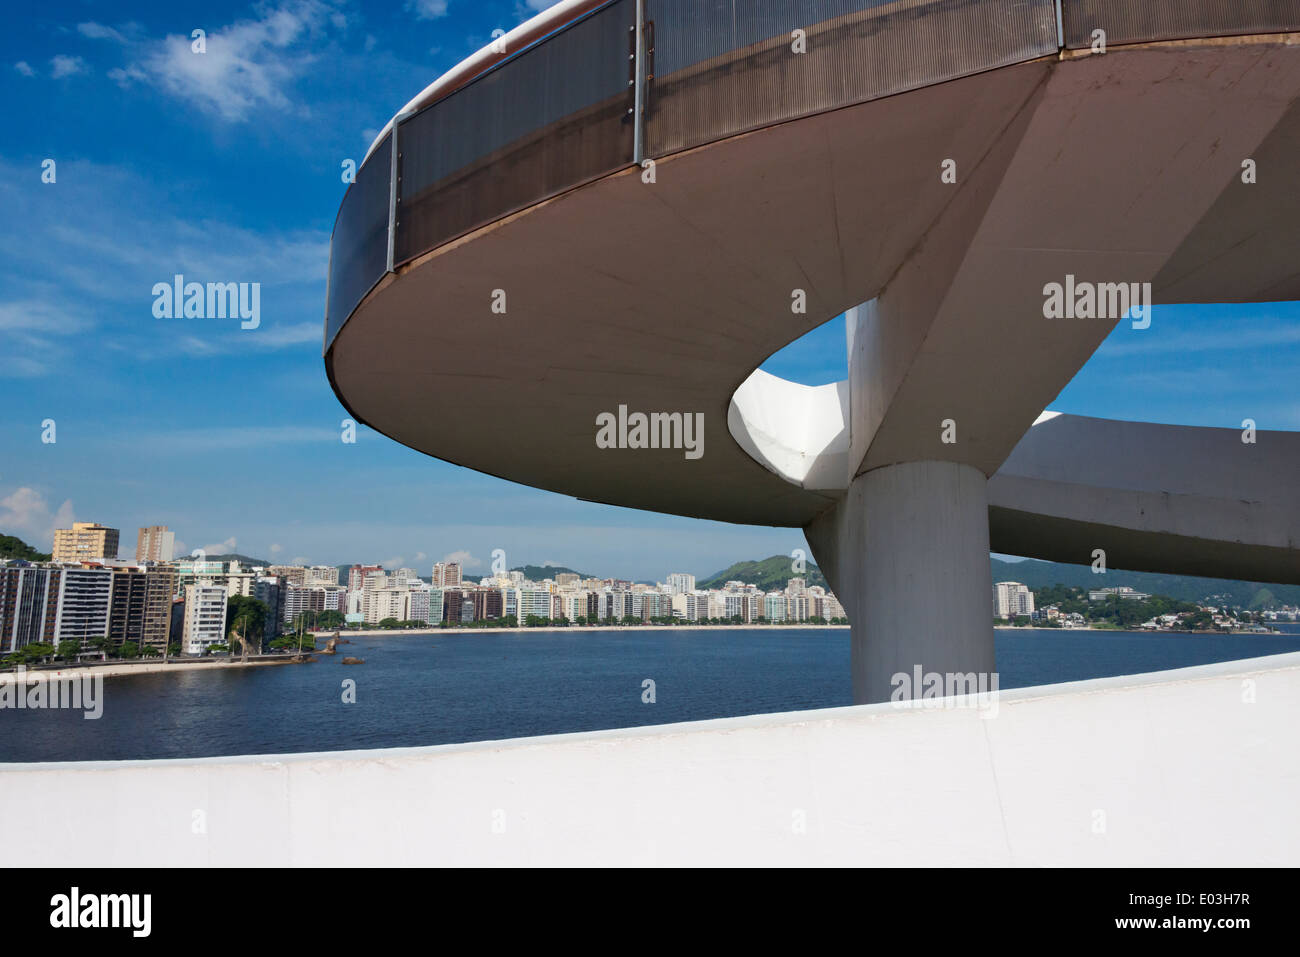 Niteroi Contemporary Art Museum (Museu de Arte Contemporanea de Niteroi-MAC) designed by Oscar Niemeyer, Rio de Janeiro, Brazil Stock Photo